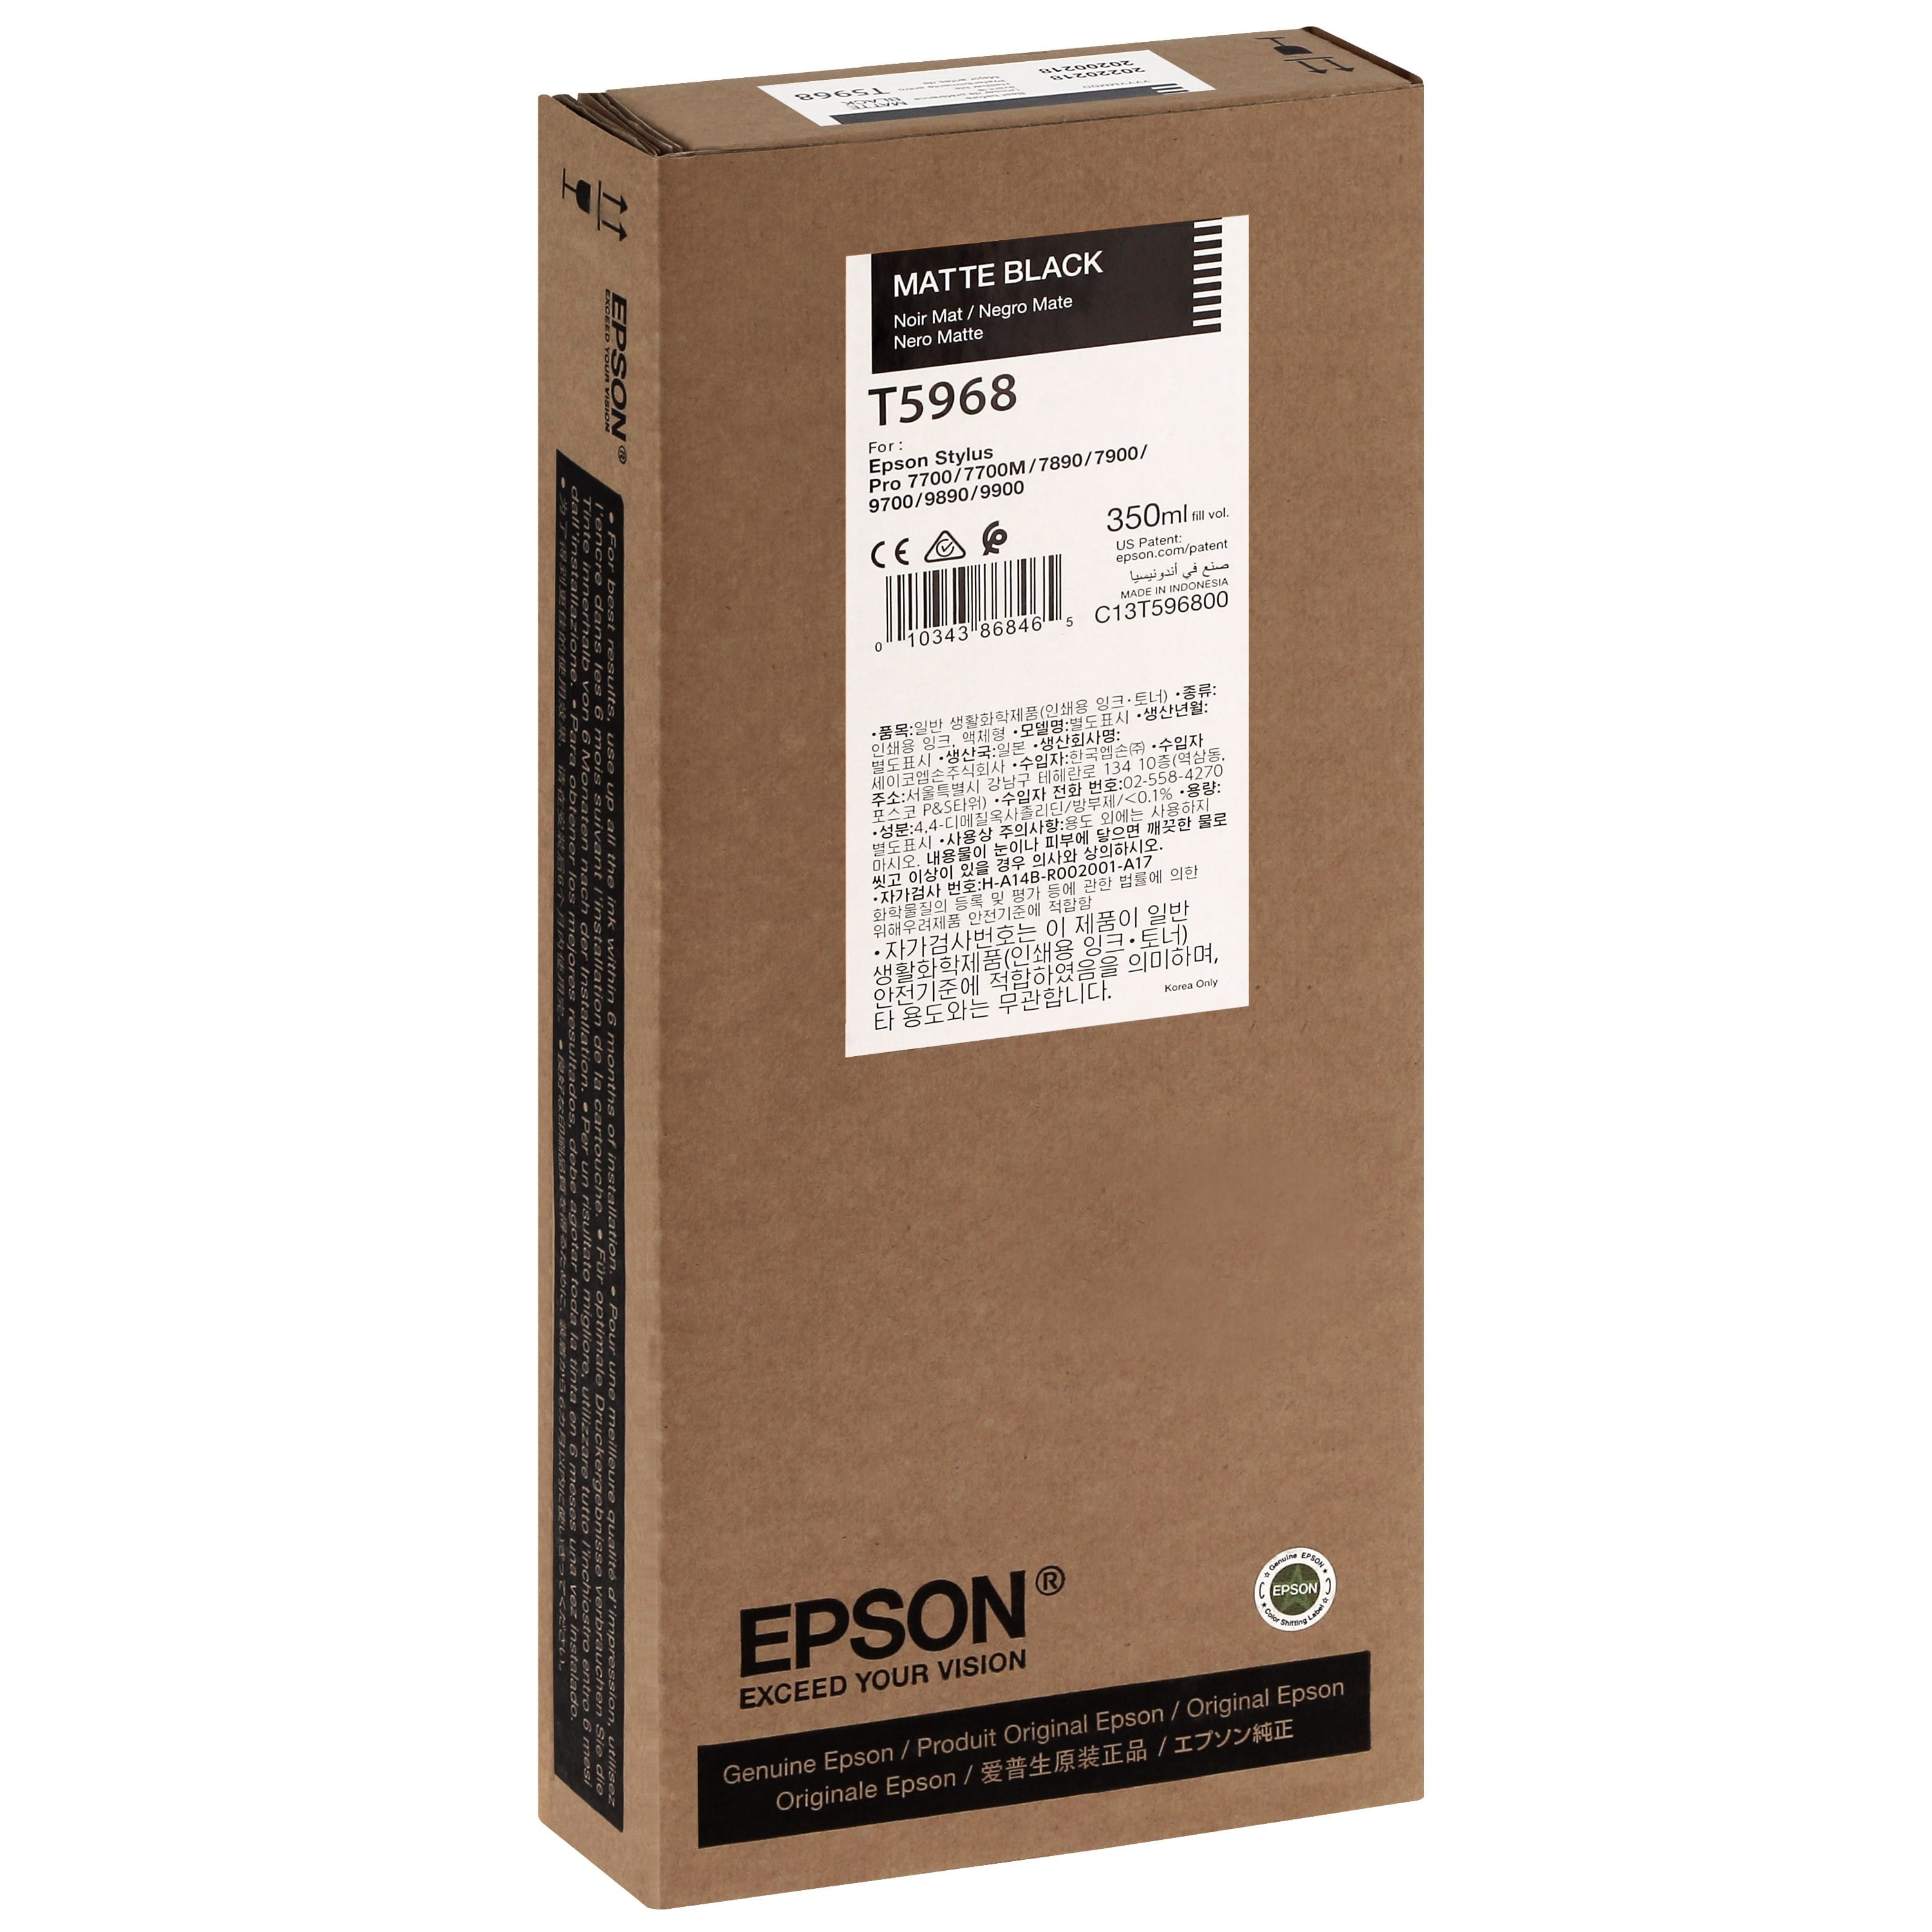 EPSON - Cartouche d'encre traceur T5968 Pour imprimante 7700/9700/7890/9890/7900/9900 Noir mat - 350ml